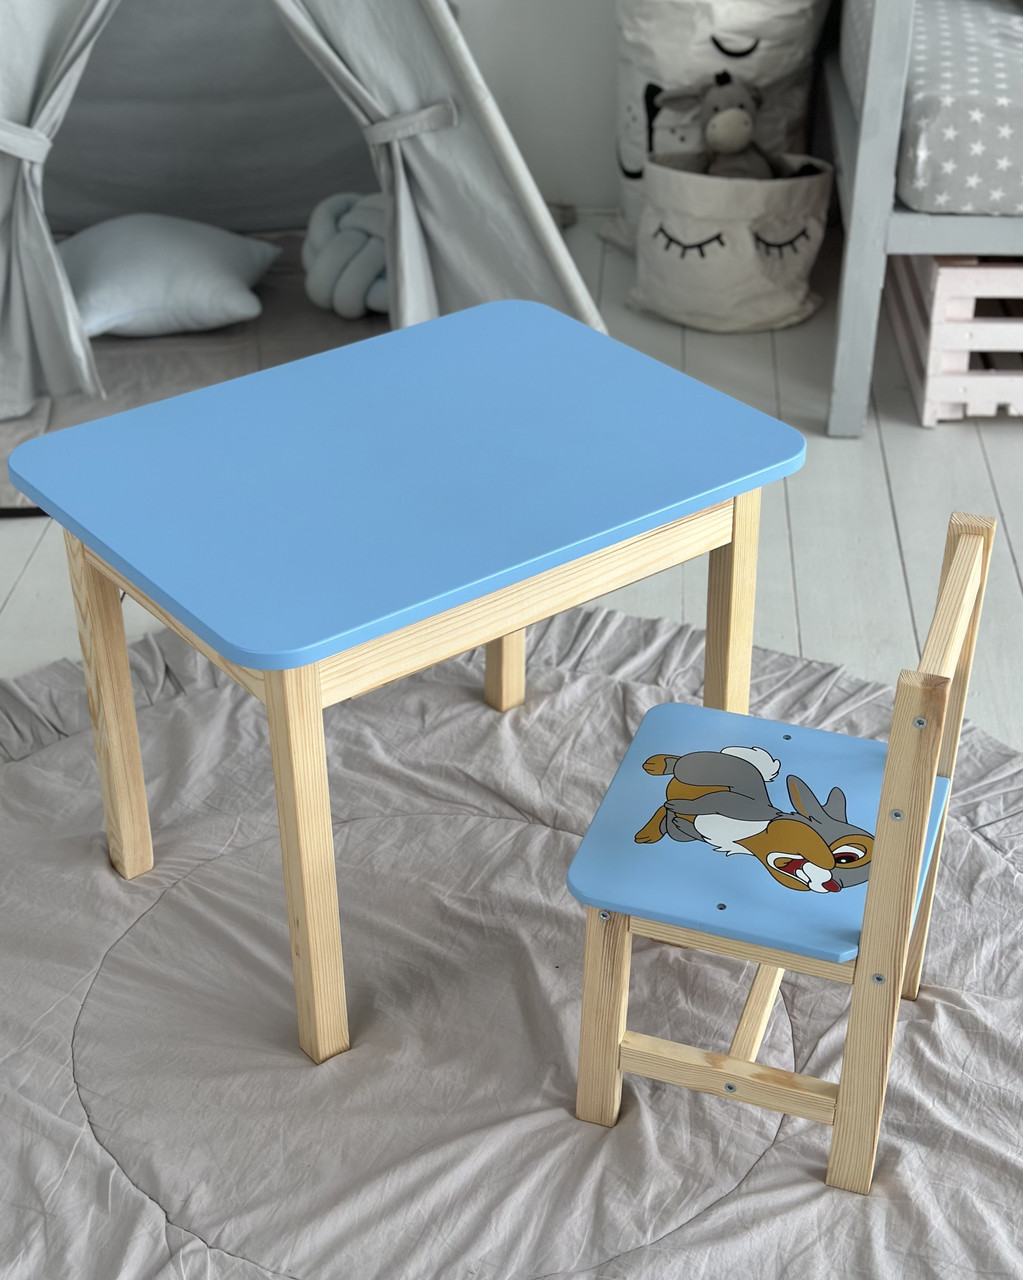 Столик дитячий зі стільчиком з нішою пеналом 46х60х45 см для творчості малювання ігор та навчання синій стіл для дітей